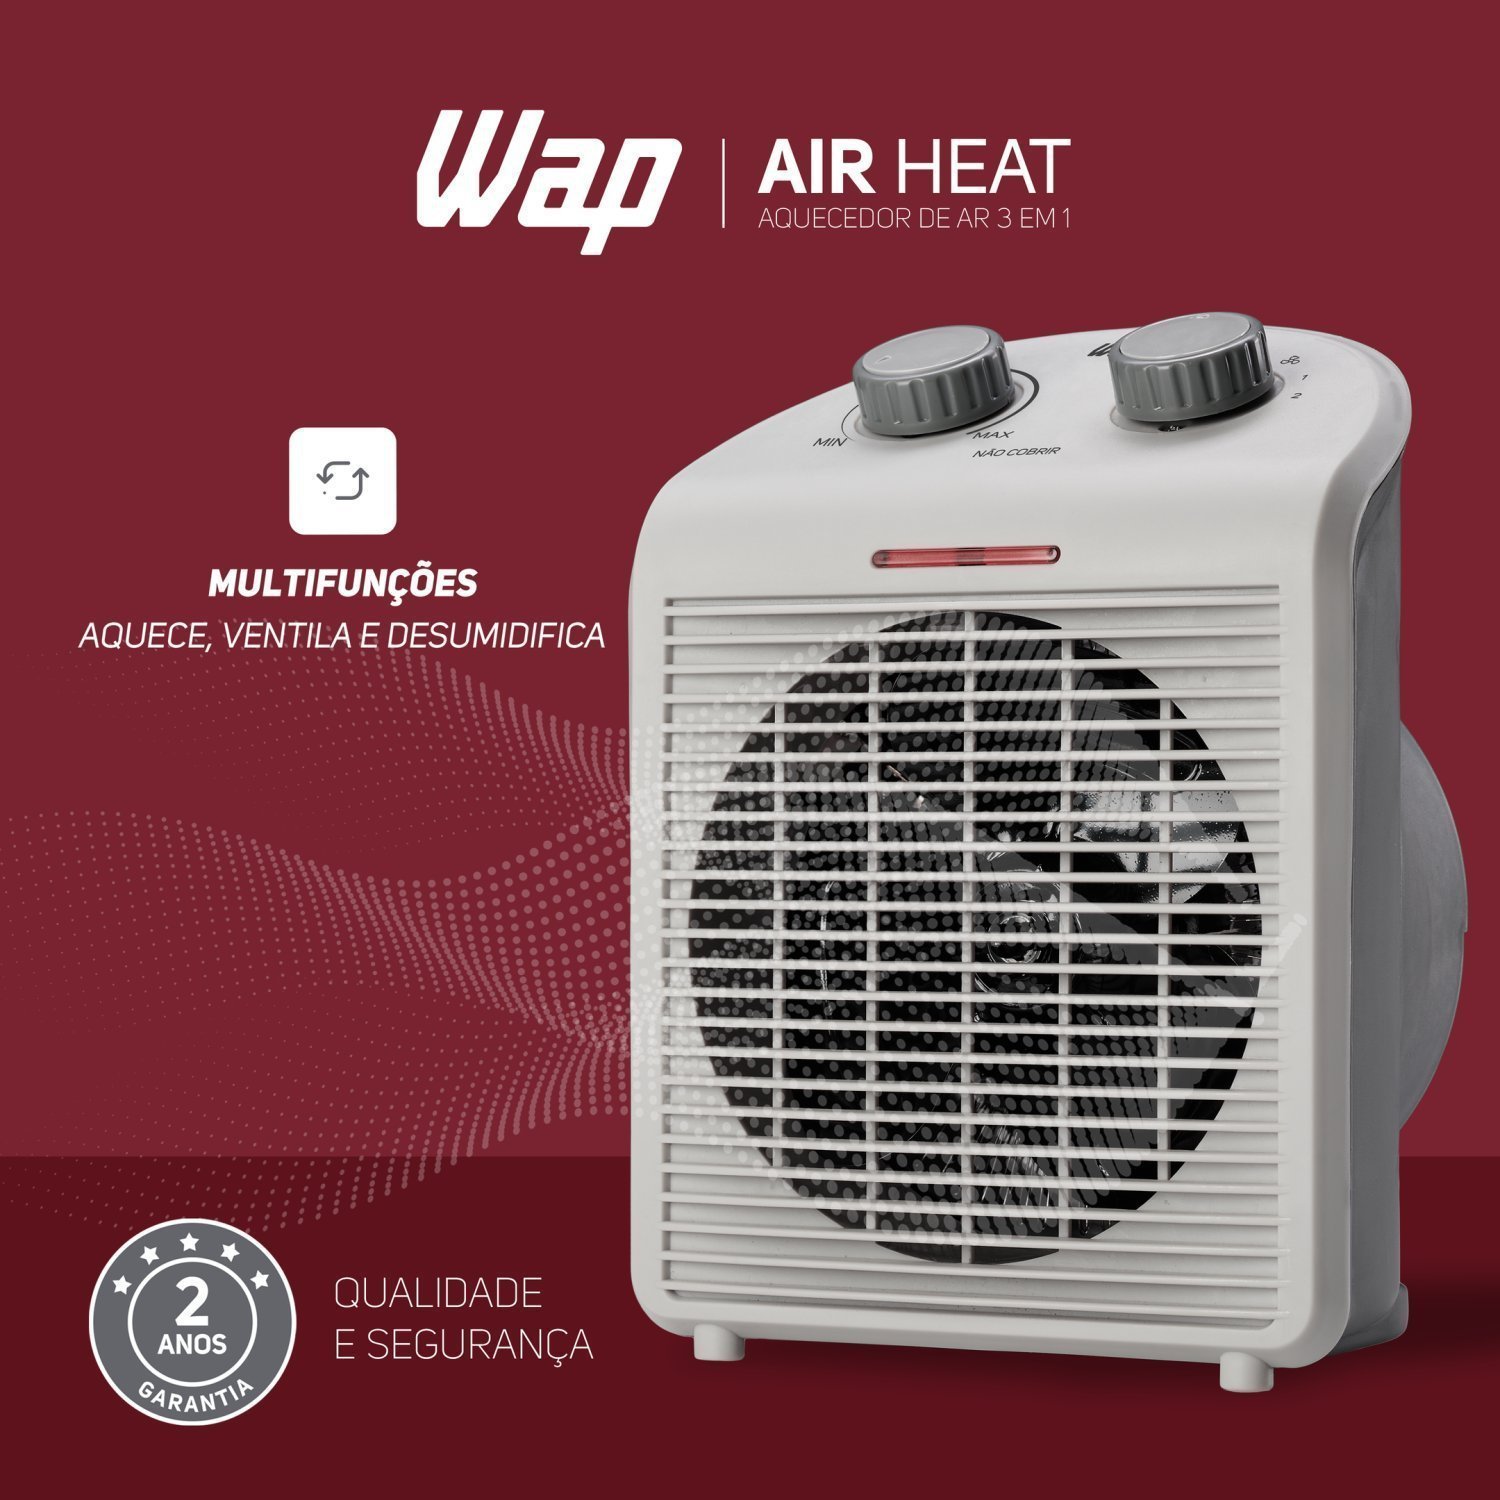 Aquecedor de Ar Portátil Air Heat 3 em 1 1500w 127v WAP Branco - 4